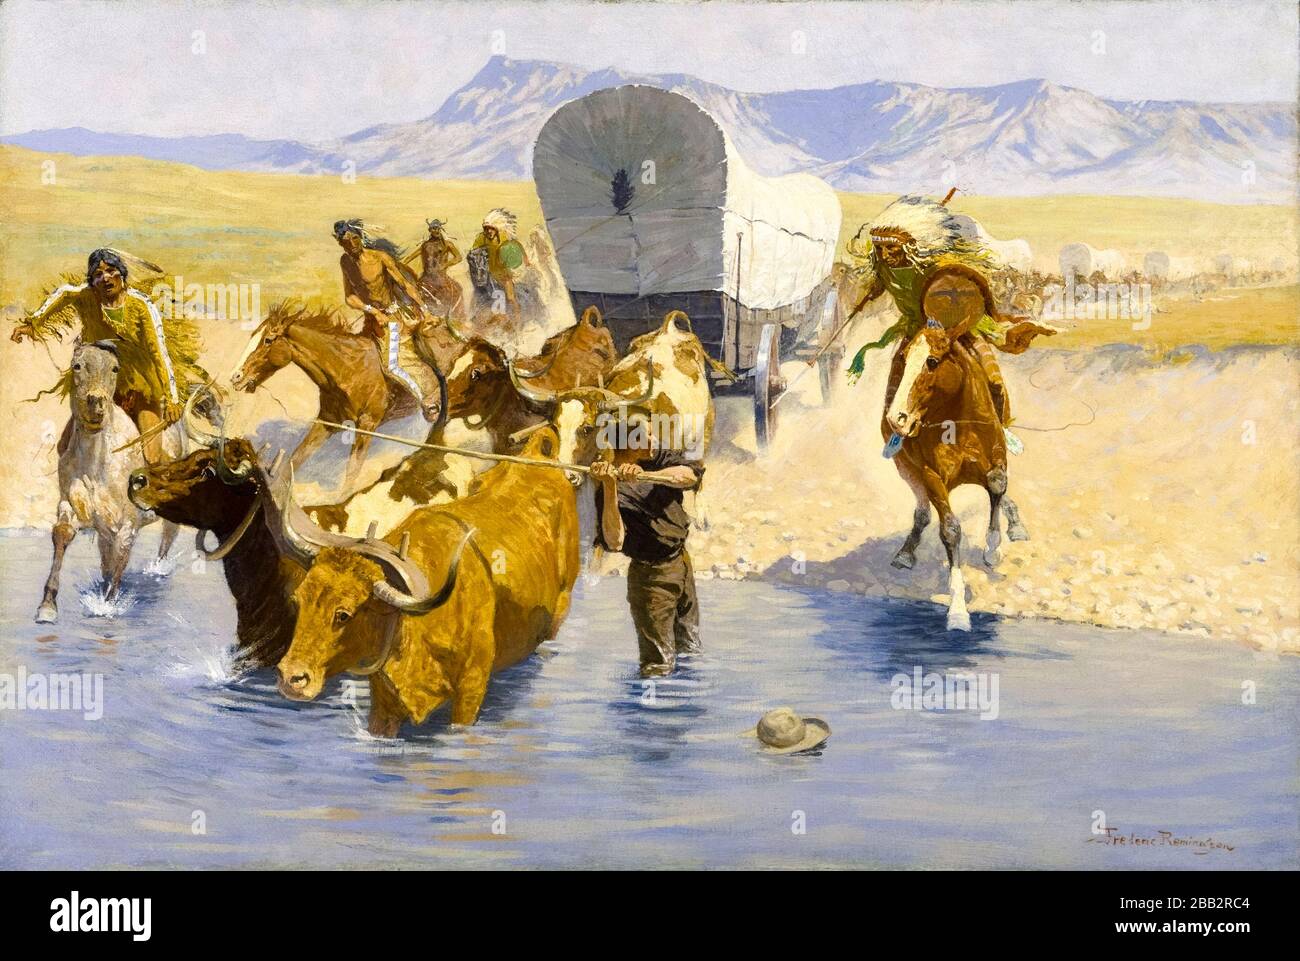 Frédéric Remington, les émigrants, peinture, vers 1903 Banque D'Images